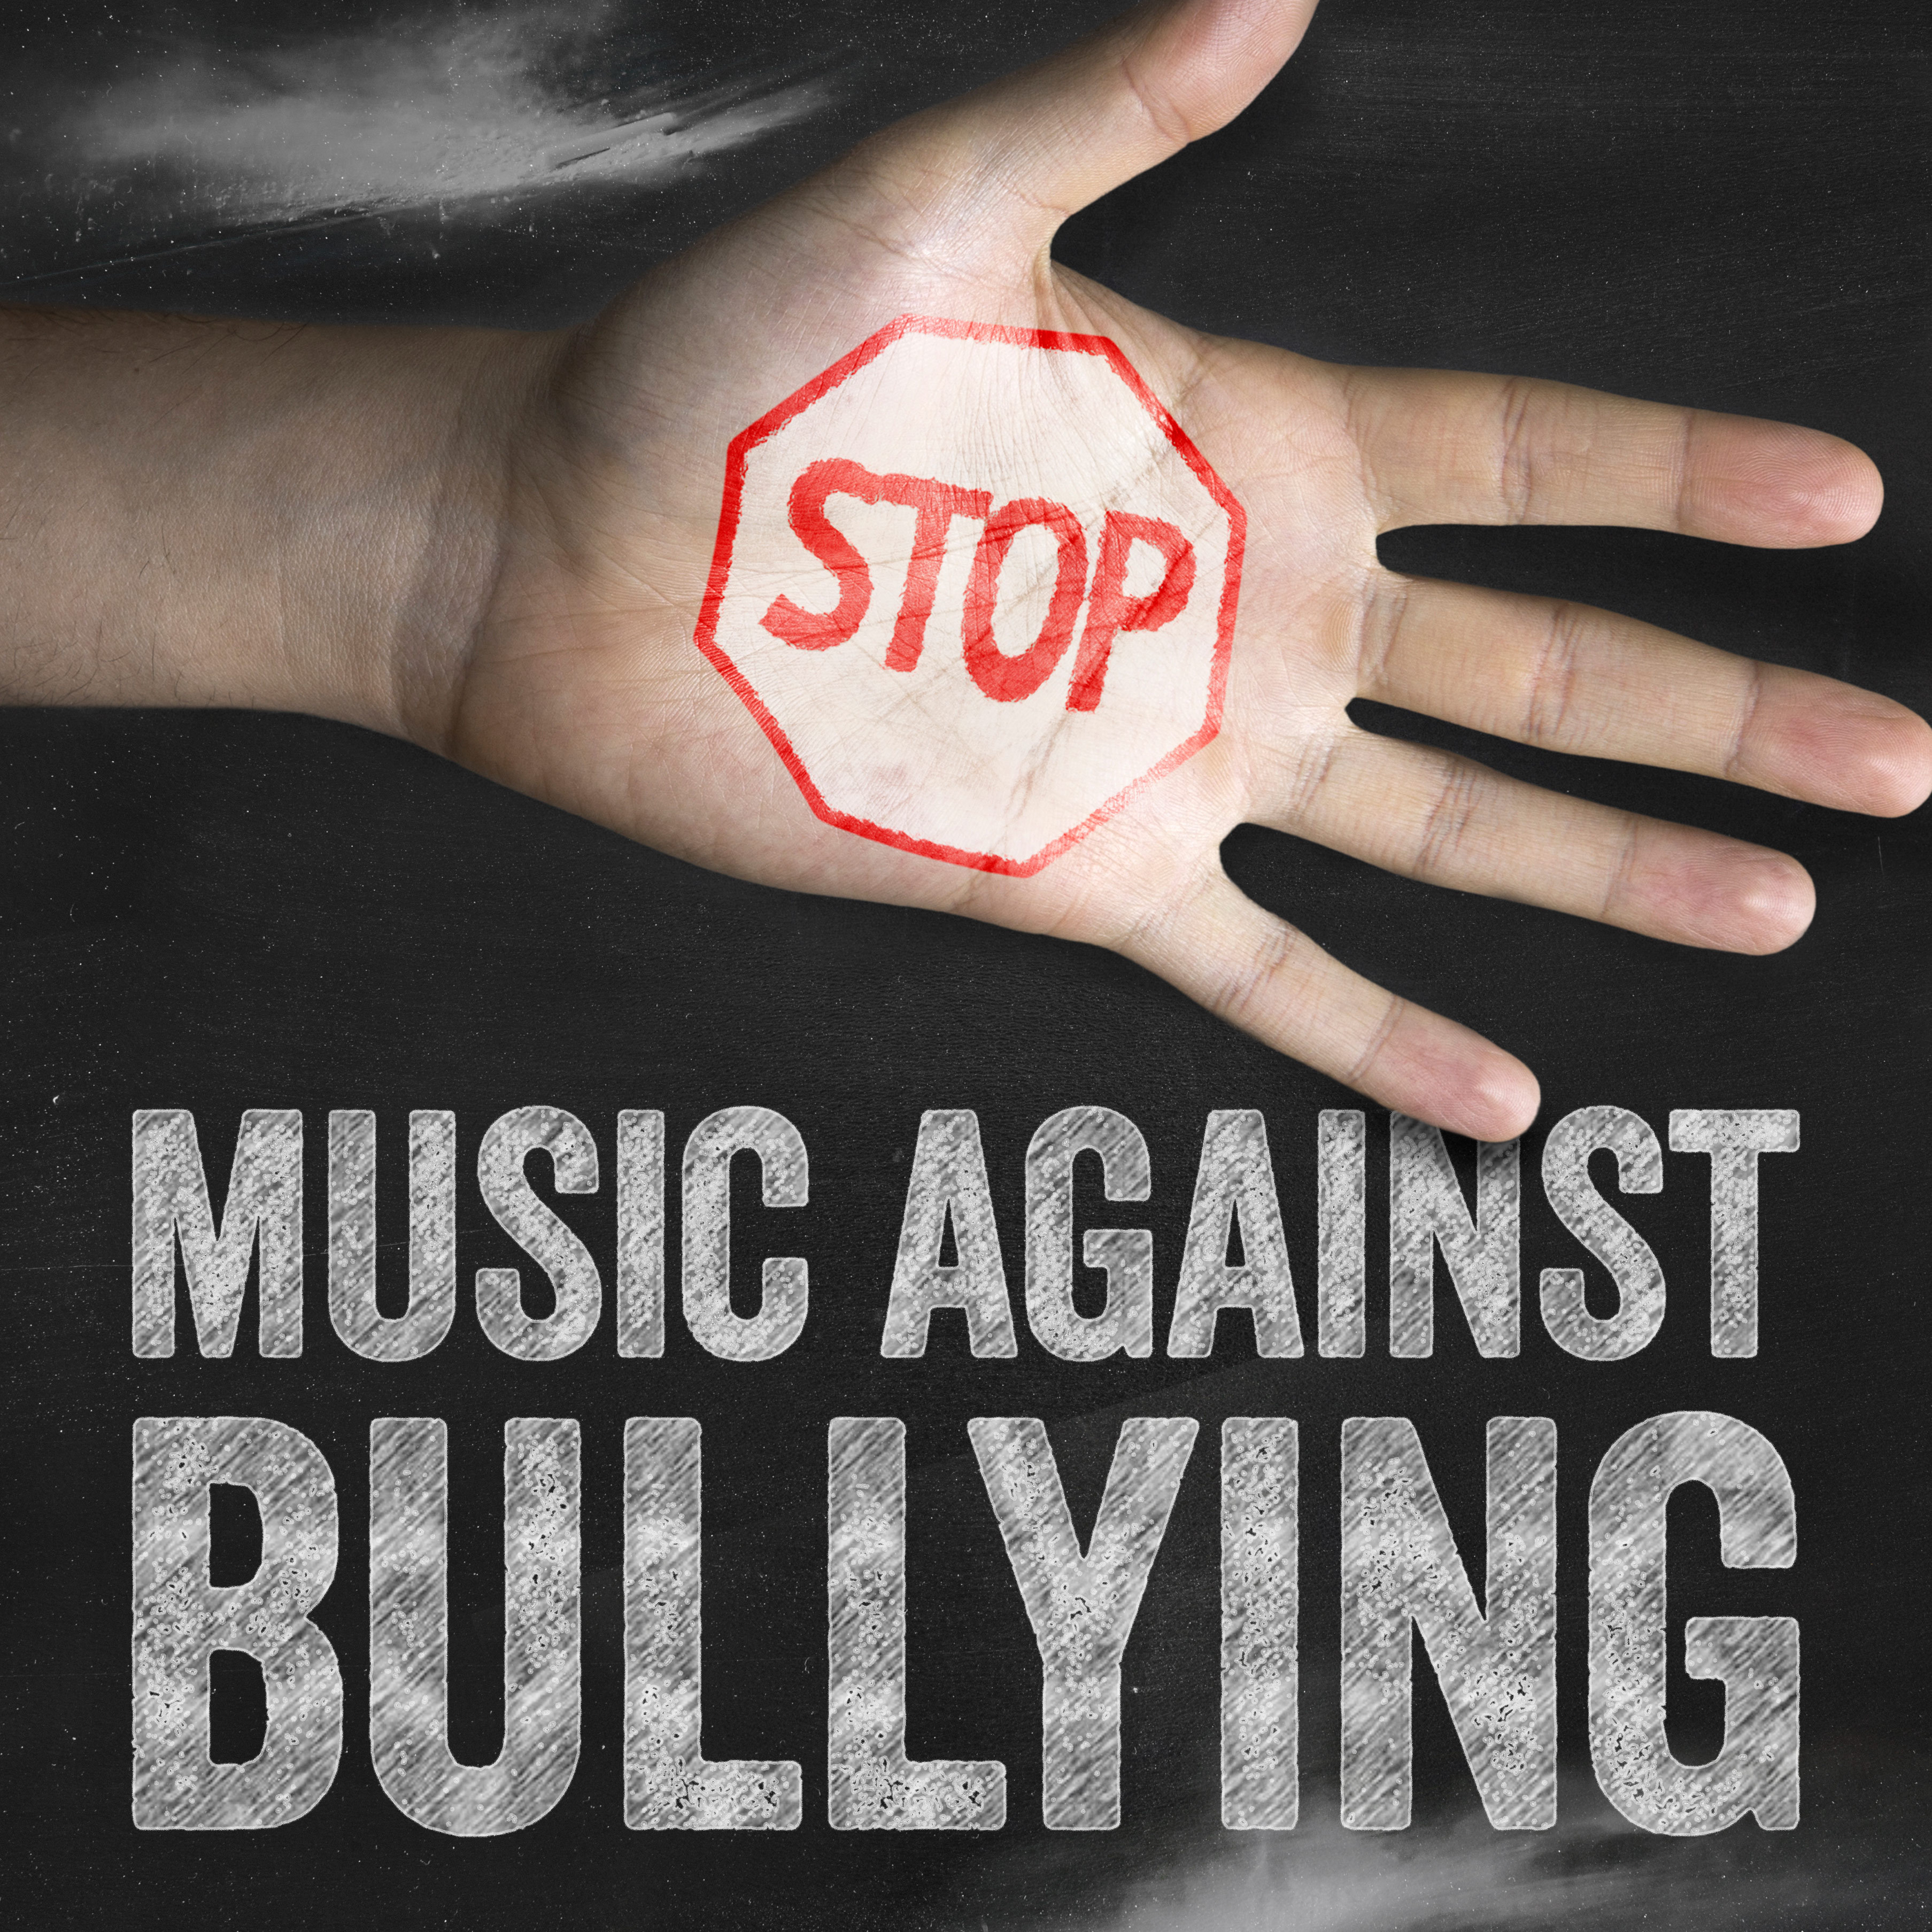 Music Against Bullying